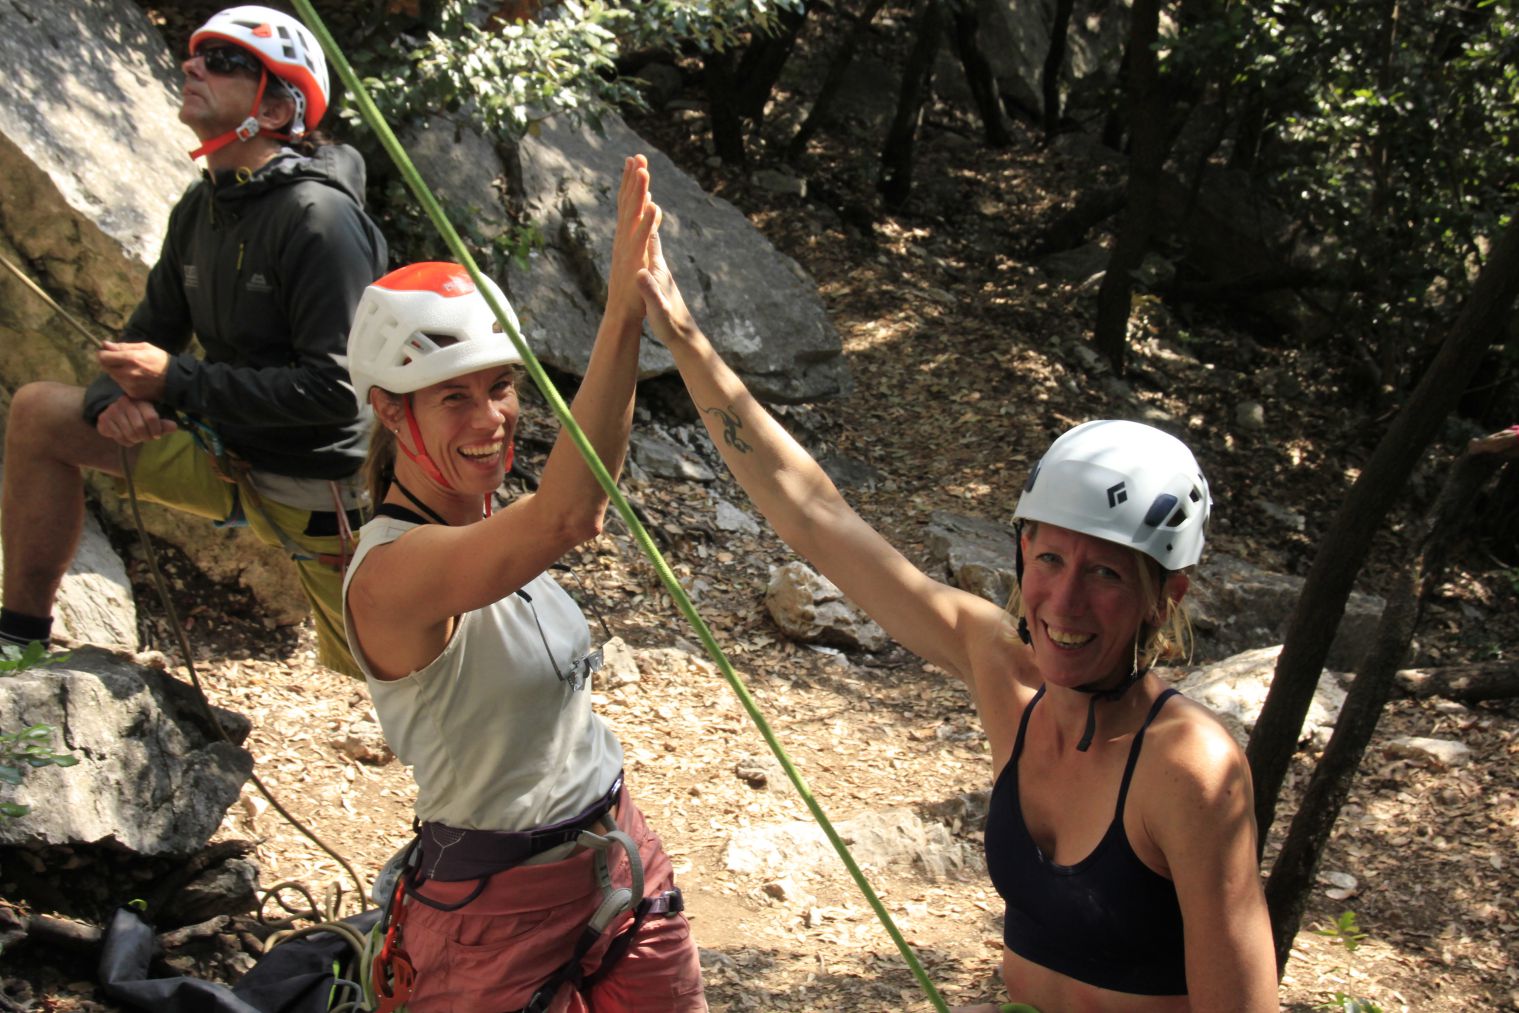 Frauen klatschen ein beim Klettern